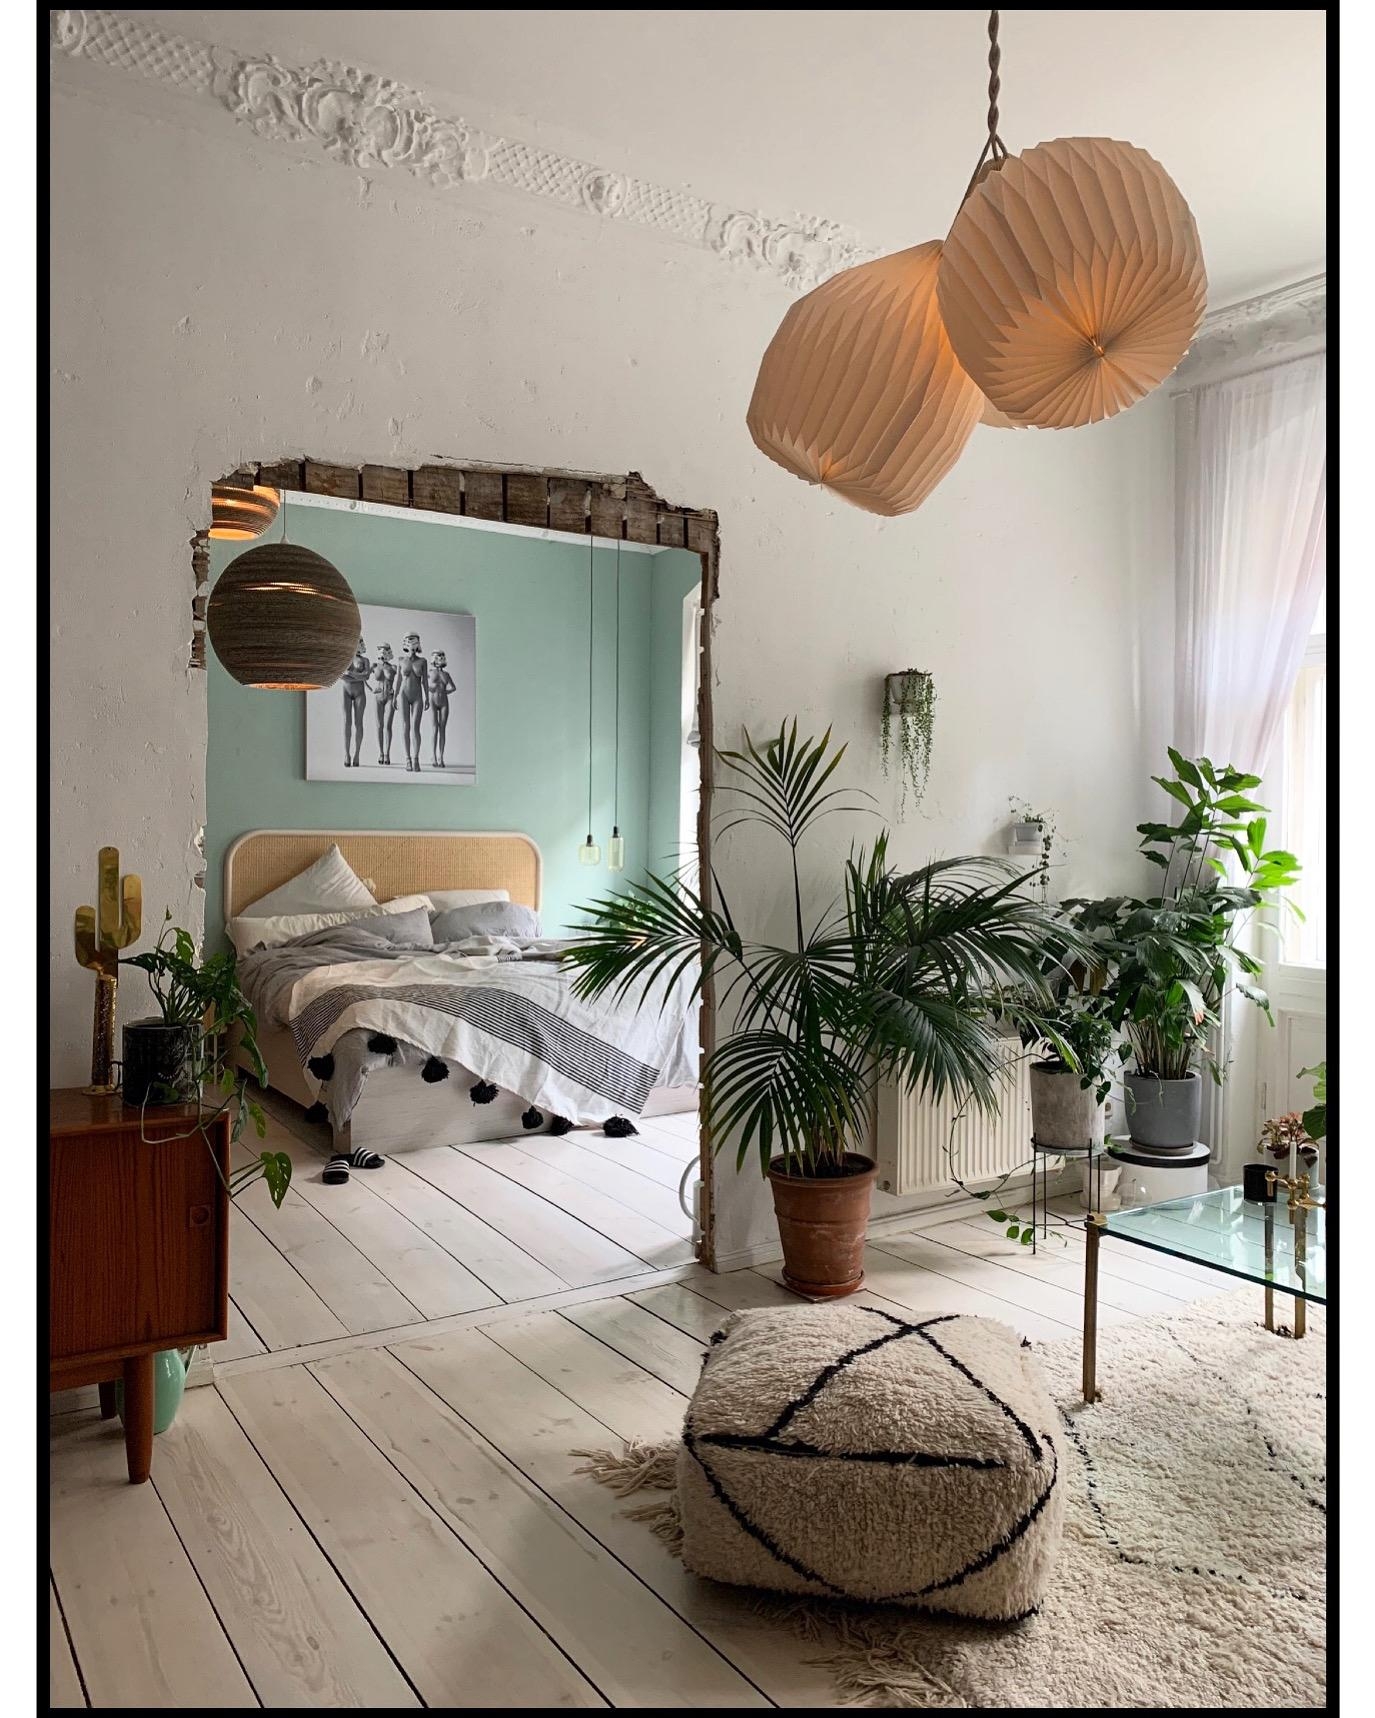 #livingroom #bedroom #homeinspo lights #floor #plants 